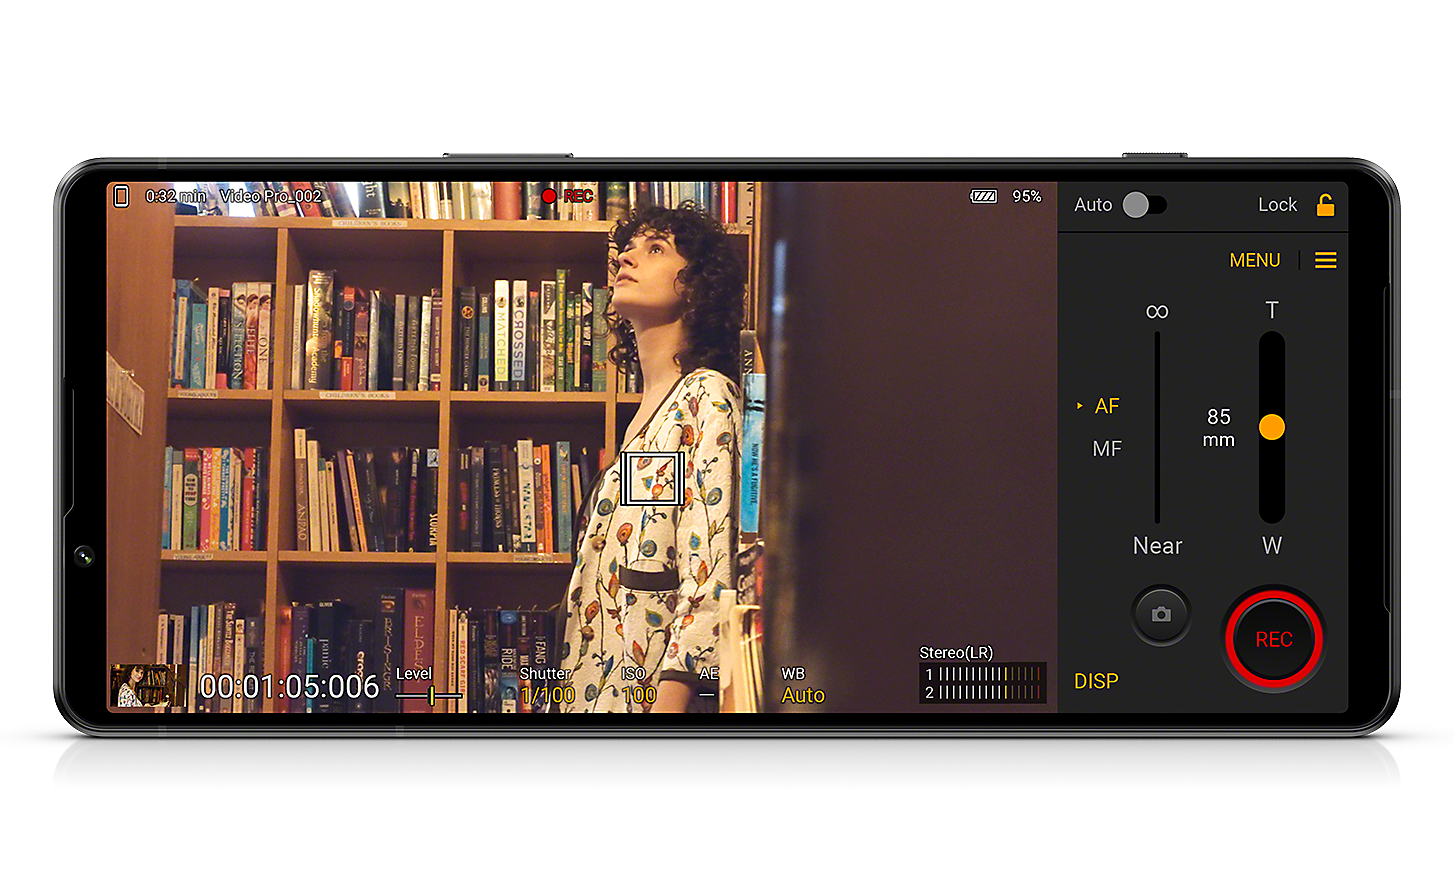 Xperia 1 IV che visualizza l'interfaccia di Videography Pro e l'immagine di una donna in una libreria